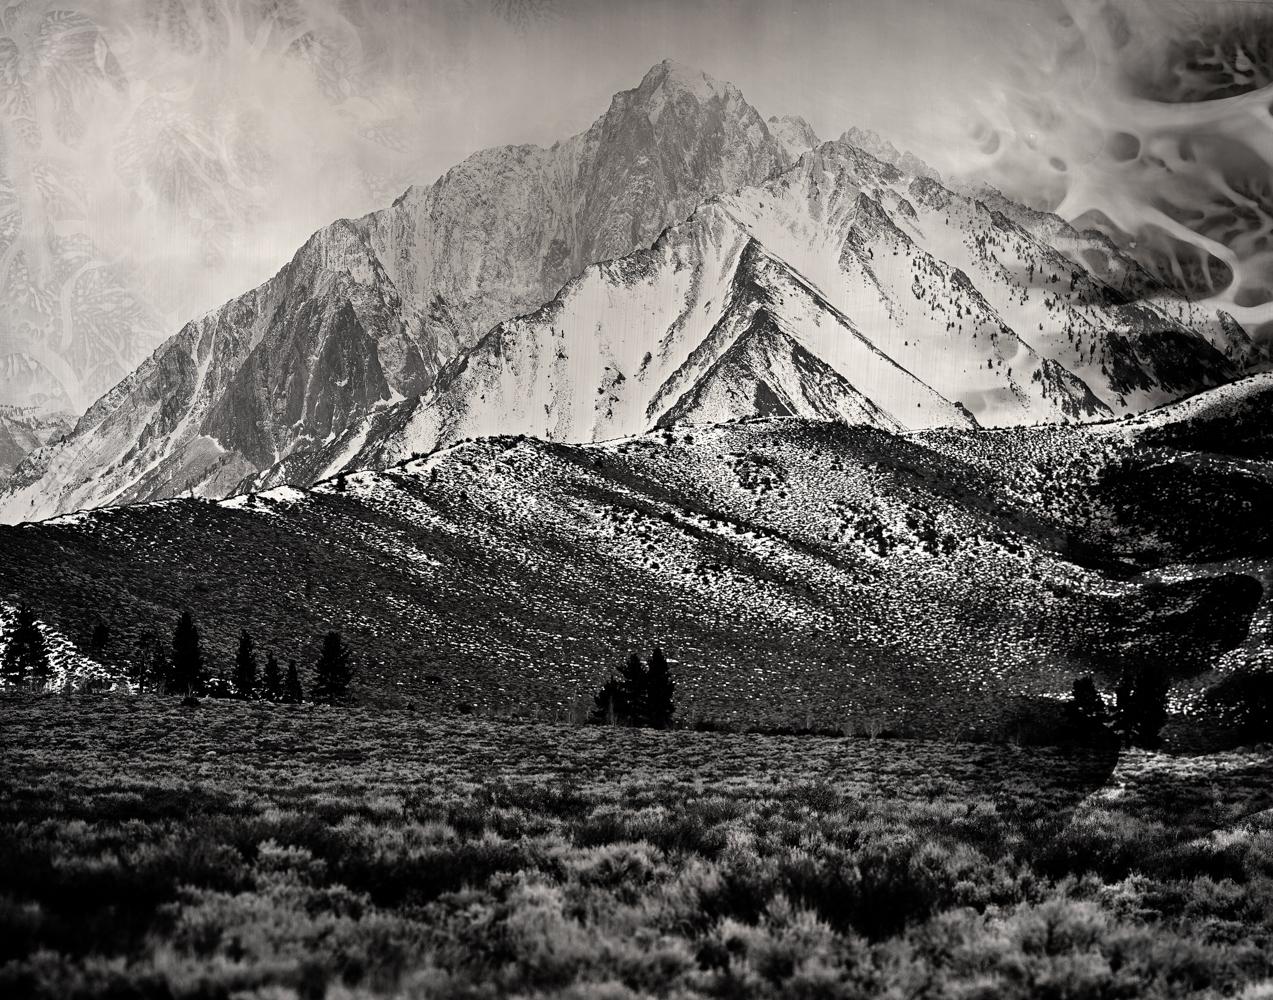 Ian Ruhter Landscape Photograph – Osteuropäische Sierras